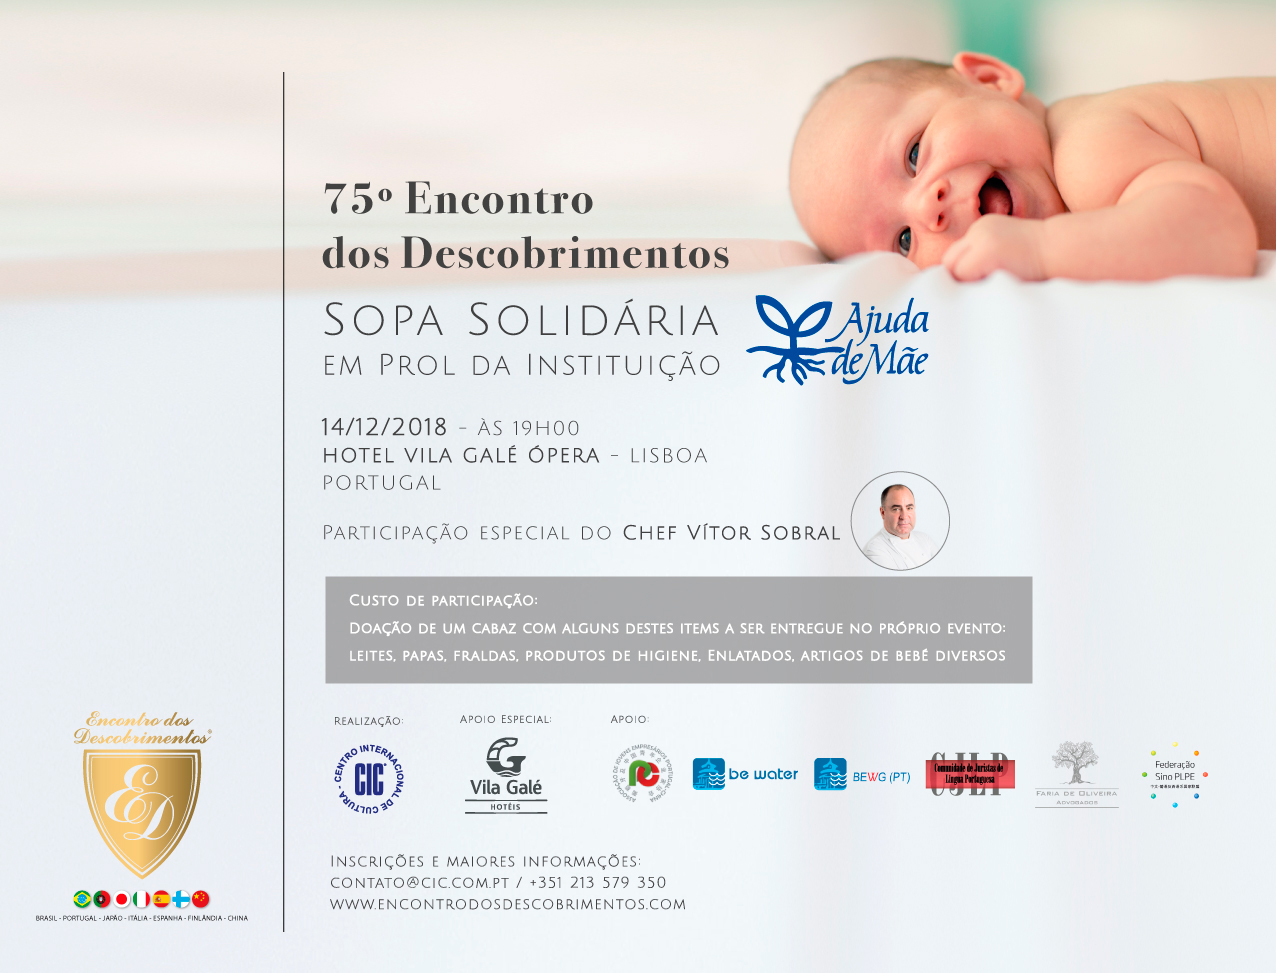 75º Encontro dos Descobrimentos - Sopa Solidária em prol da Instituição Ajuda de Mãe